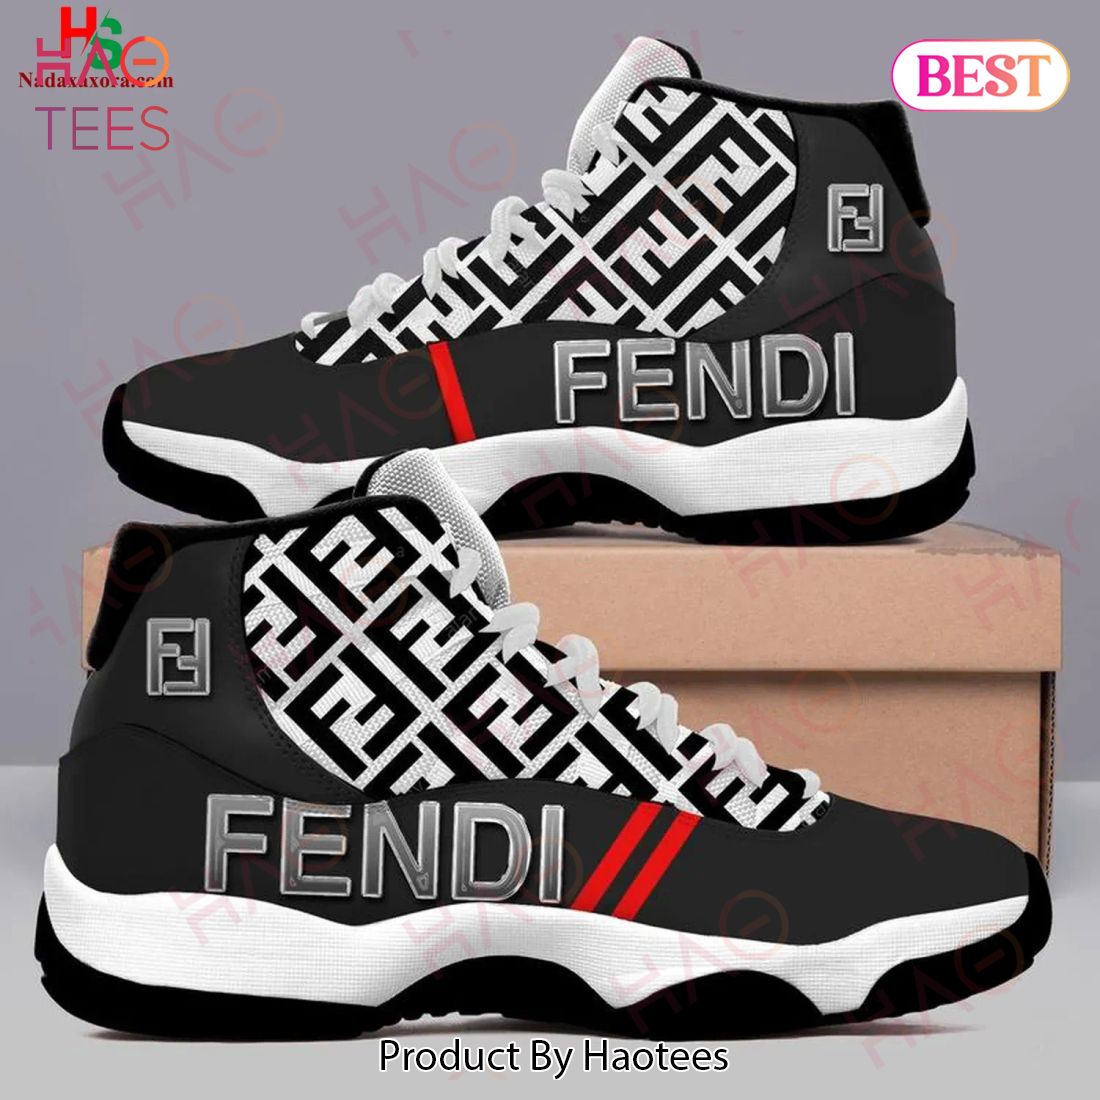 Fendi Monogram Air Jordan 11 Sneakers Shoes